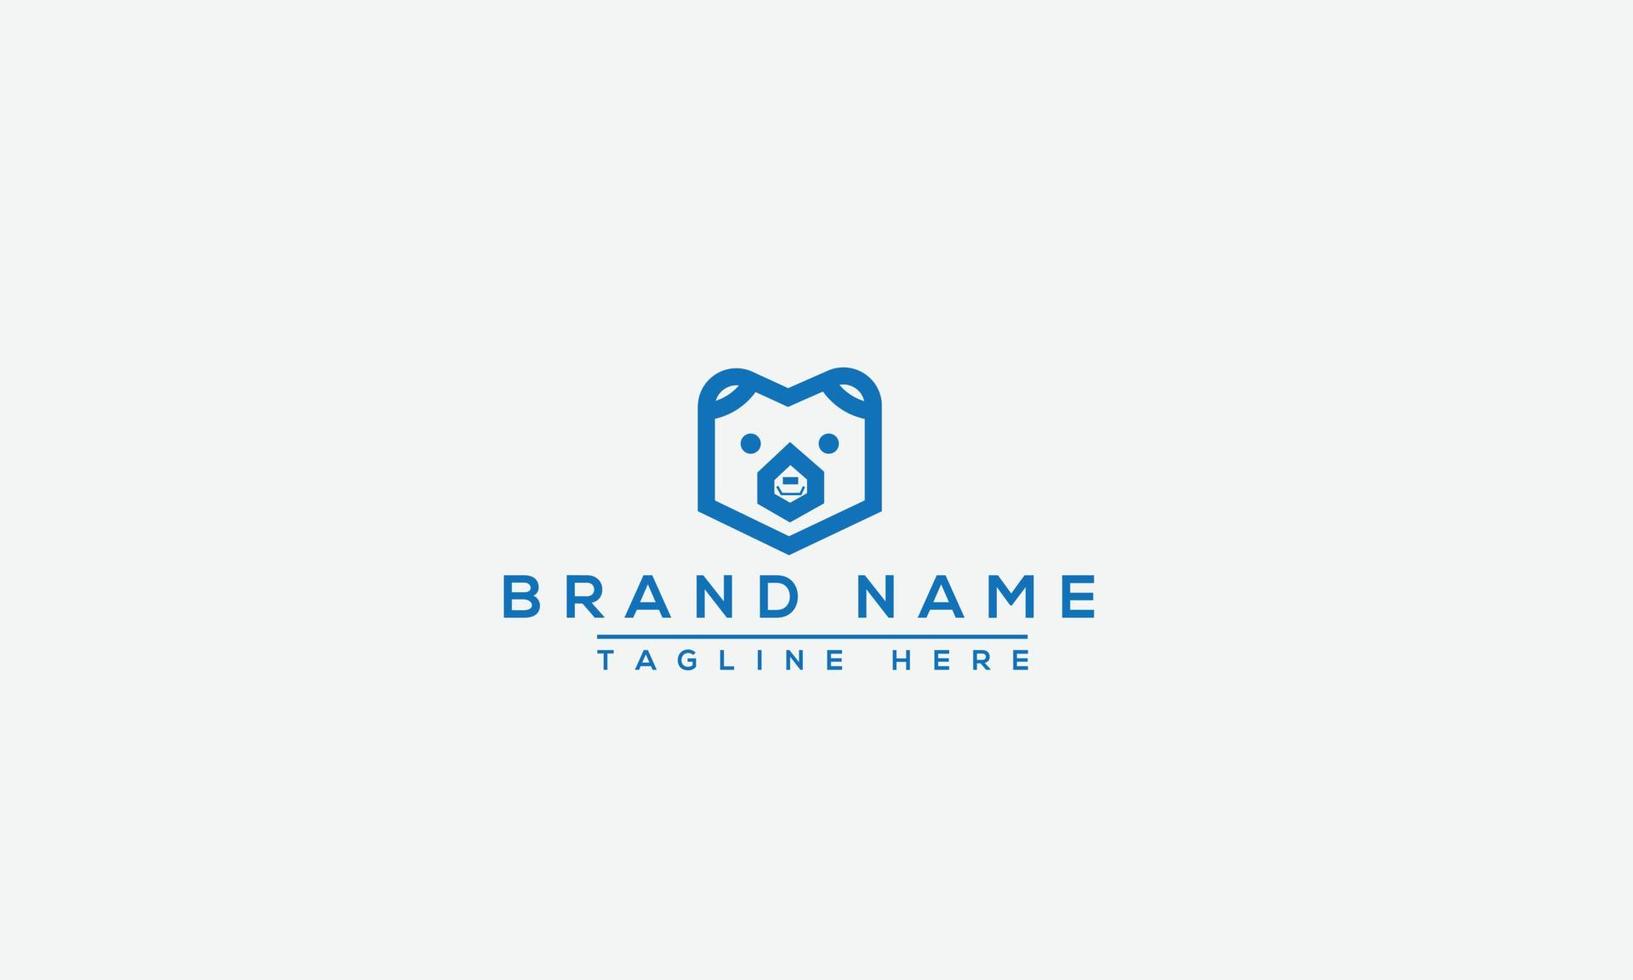 elemento de marca gráfico vectorial de plantilla de diseño de logotipo de oso. vector